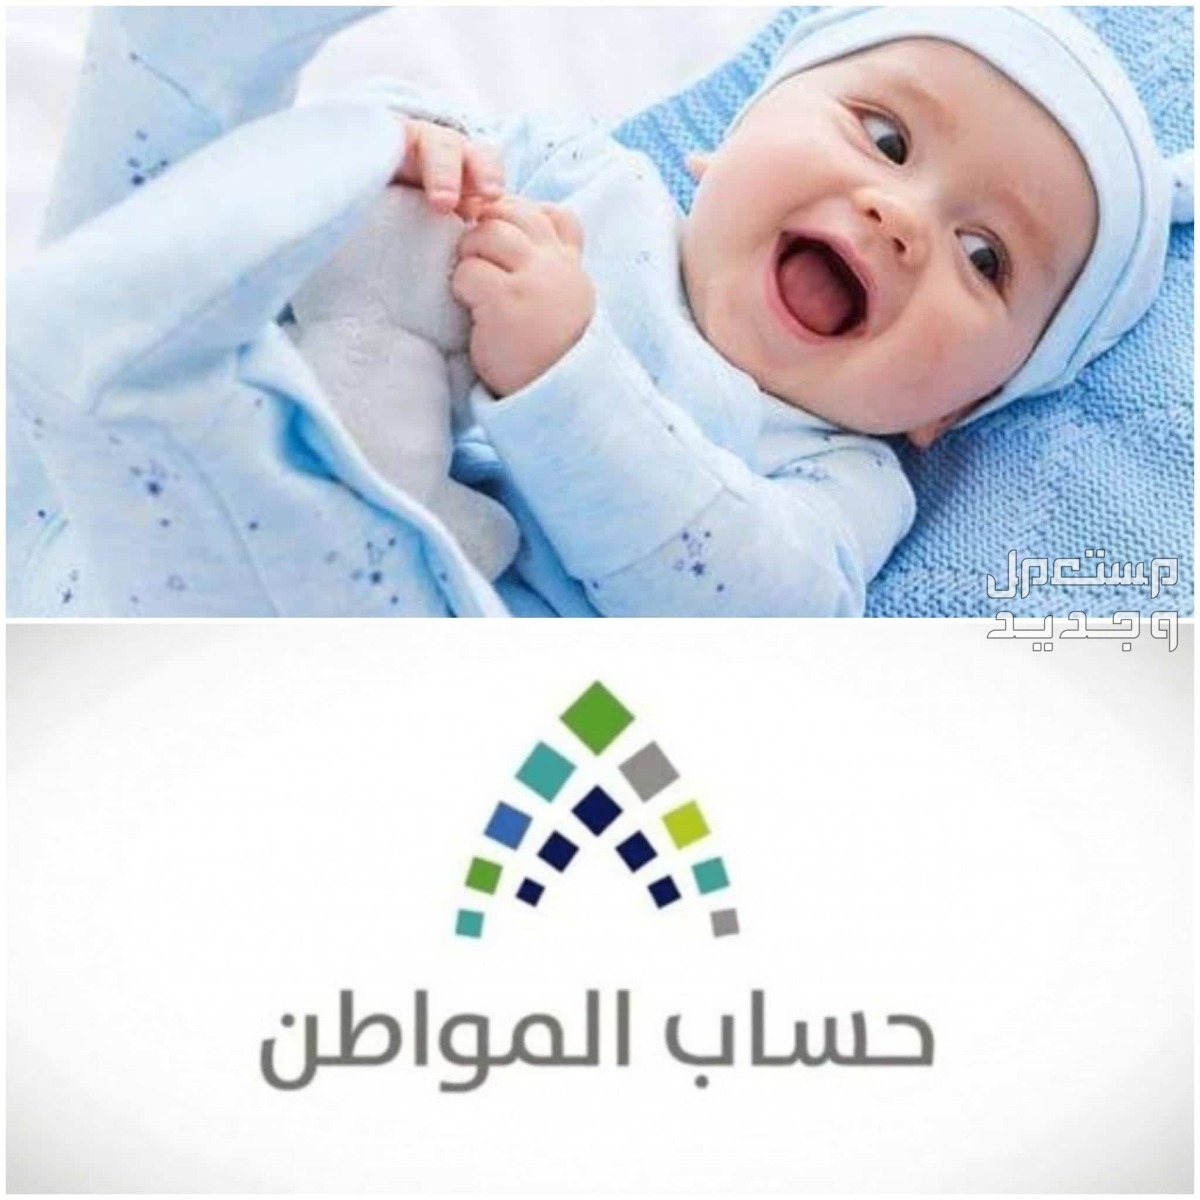 طريقة تسجيل المولود الجديد في حساب المواطن 1445 في السعودية تسجيل المولود الجديد في حساب المواطن